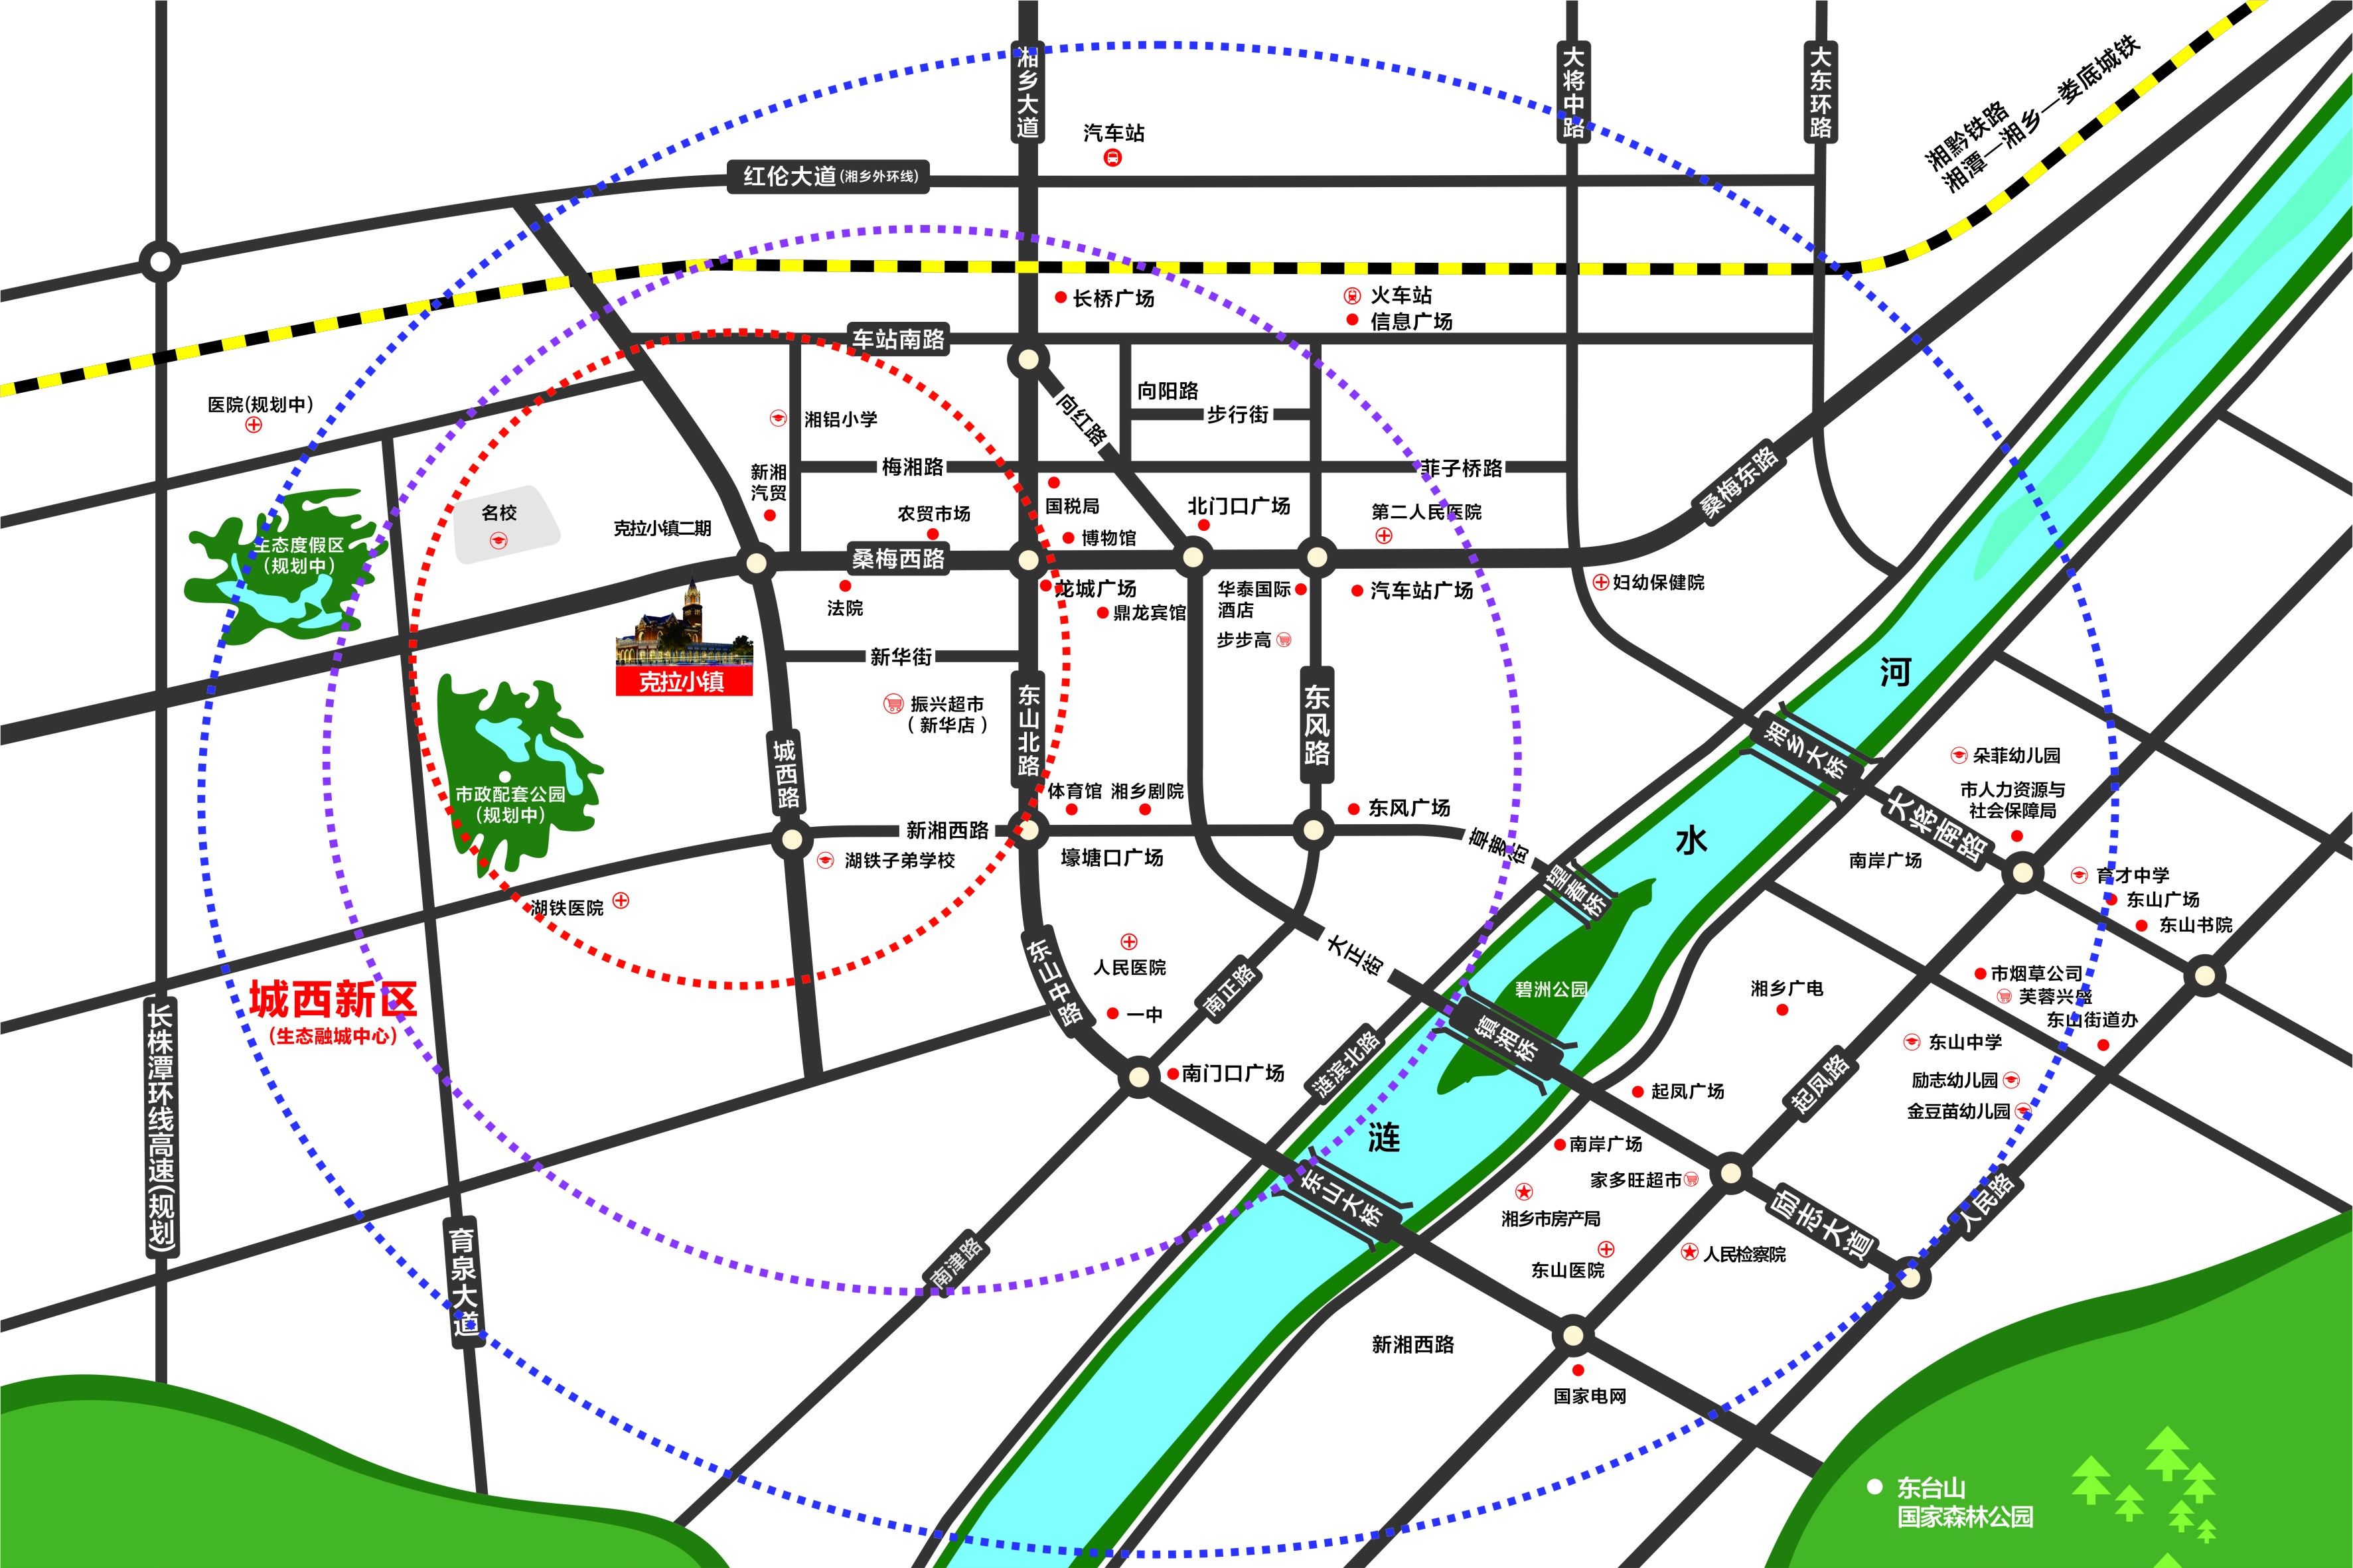  克拉小镇区位交通图